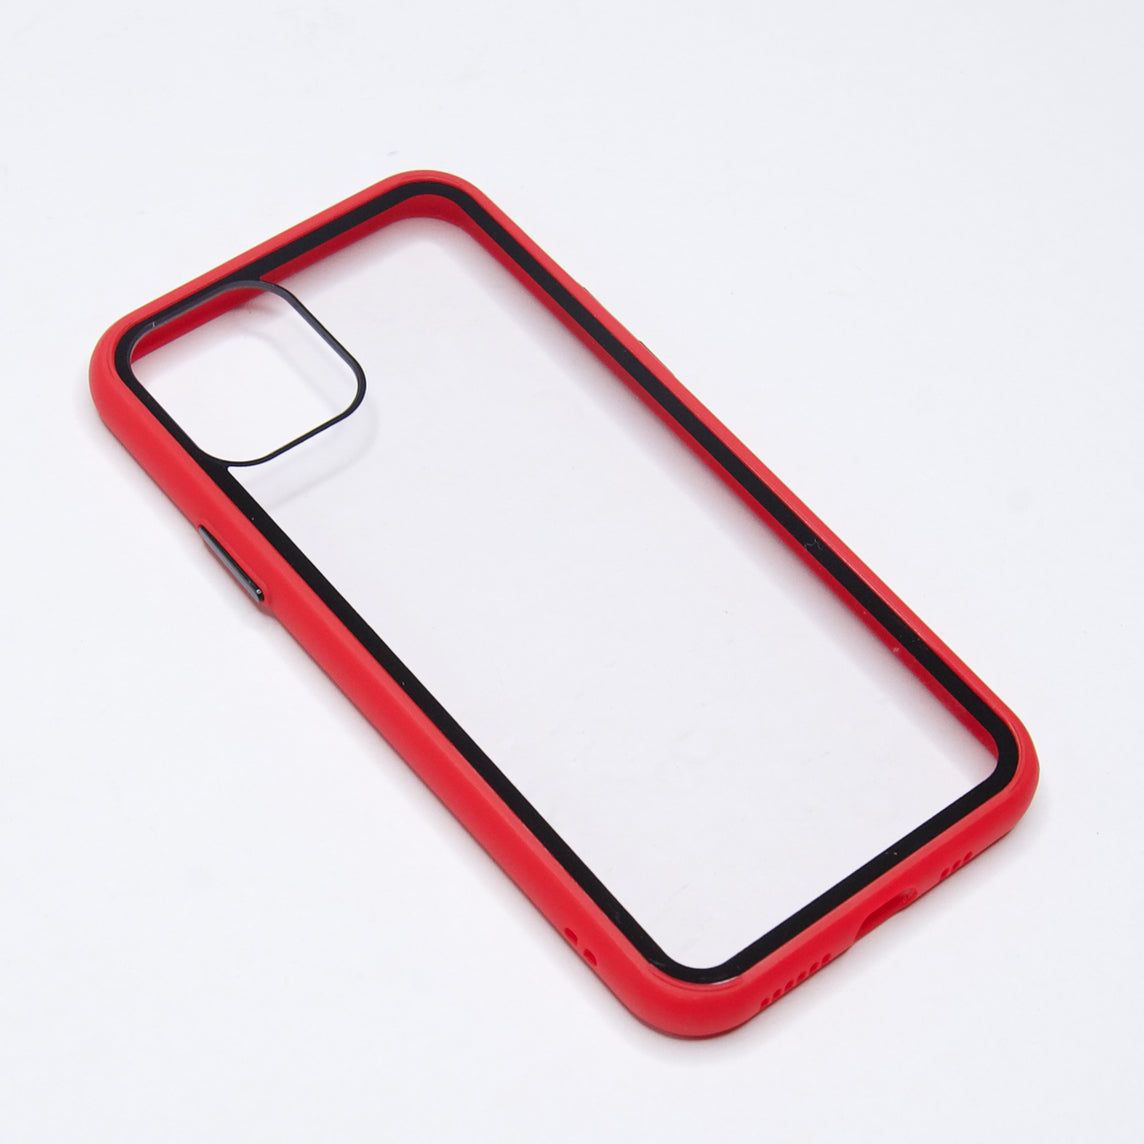 estuches transparente el rey apple iphone 11 pro max color rojo / transparente